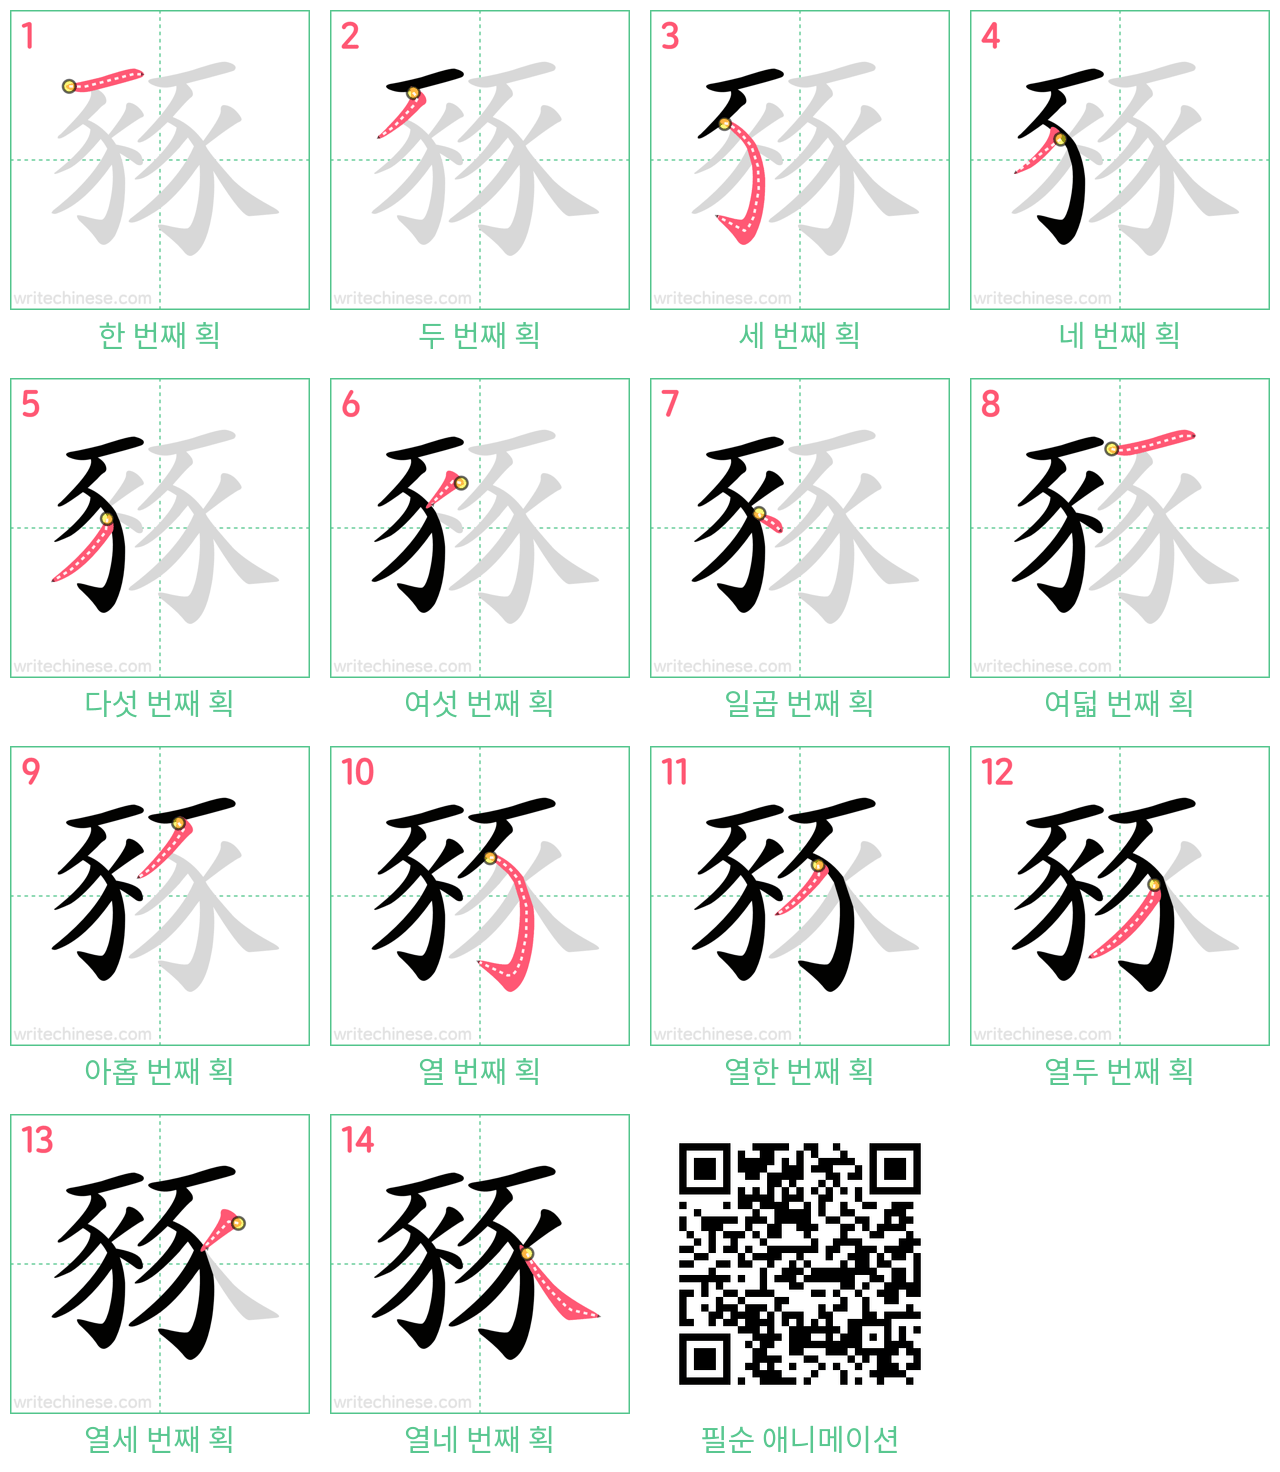 豩 step-by-step stroke order diagrams